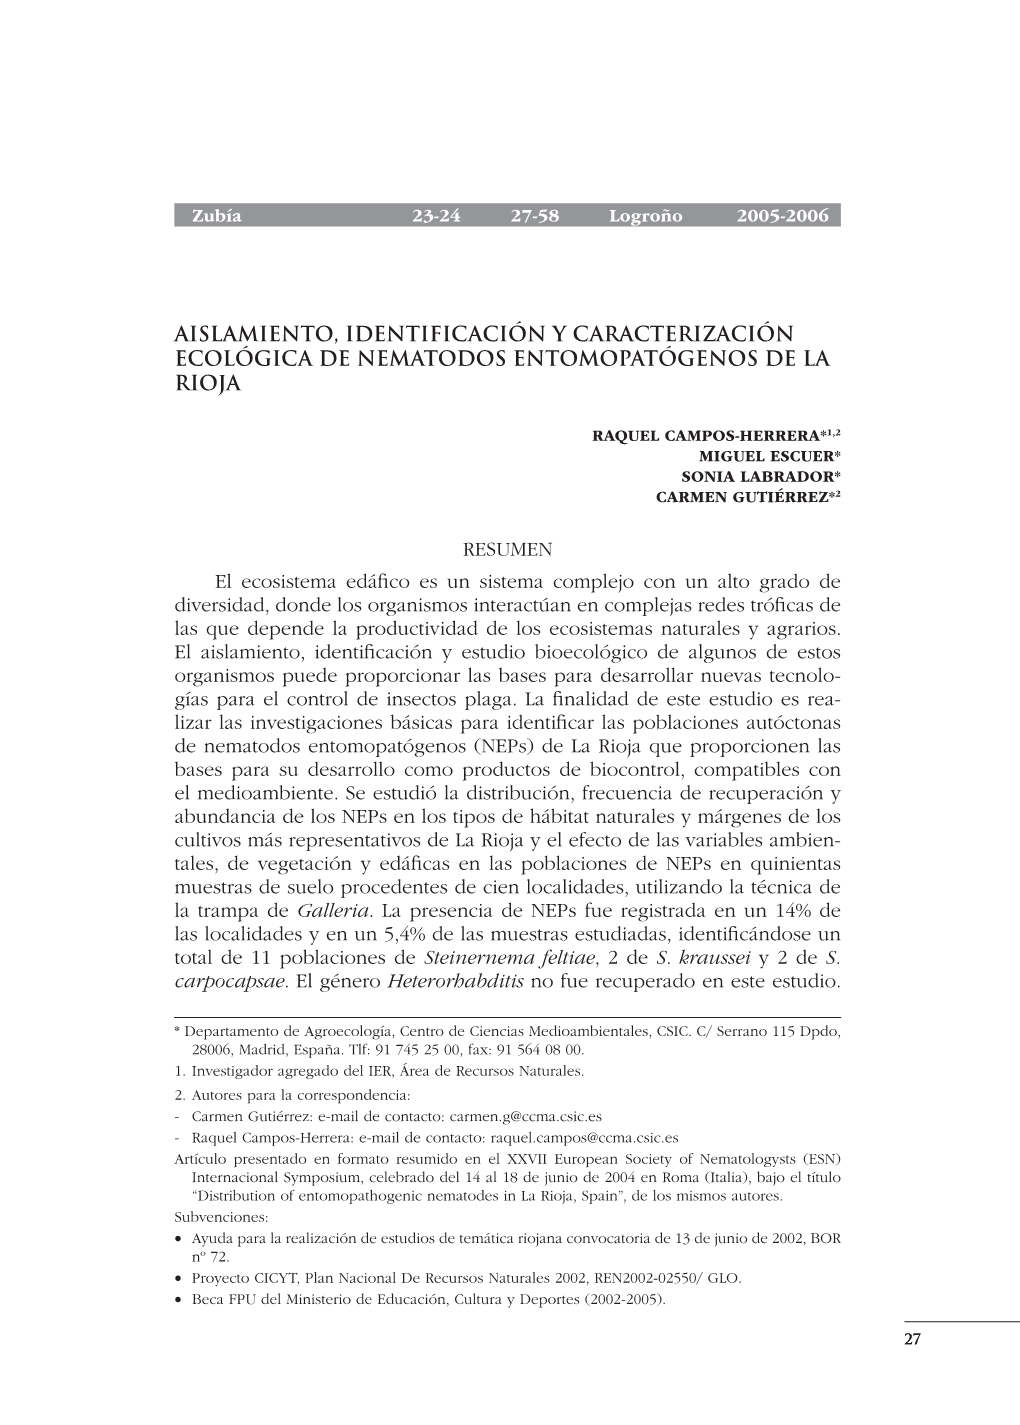 Aislamiento, Identificación Y Caracterización Ecológica De Nematodos Entomopatógenos De La Rioja